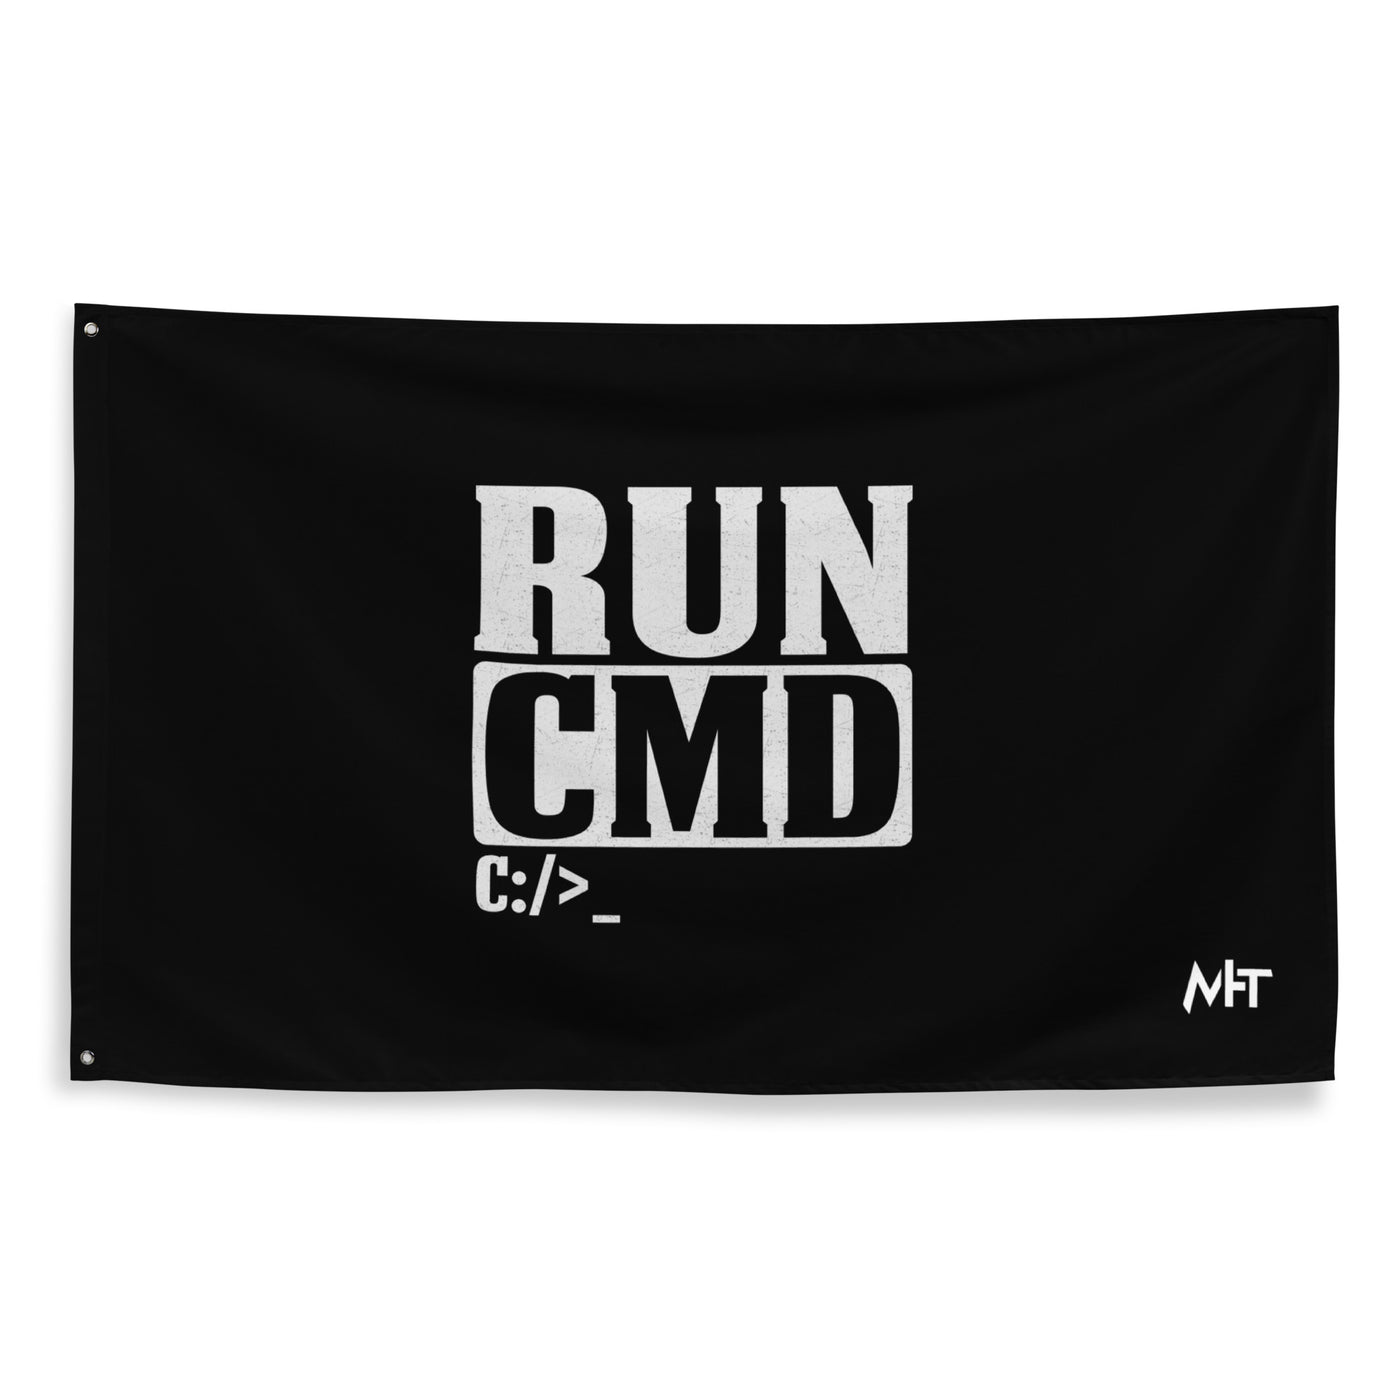 Run CMD C:/>_ - Flag